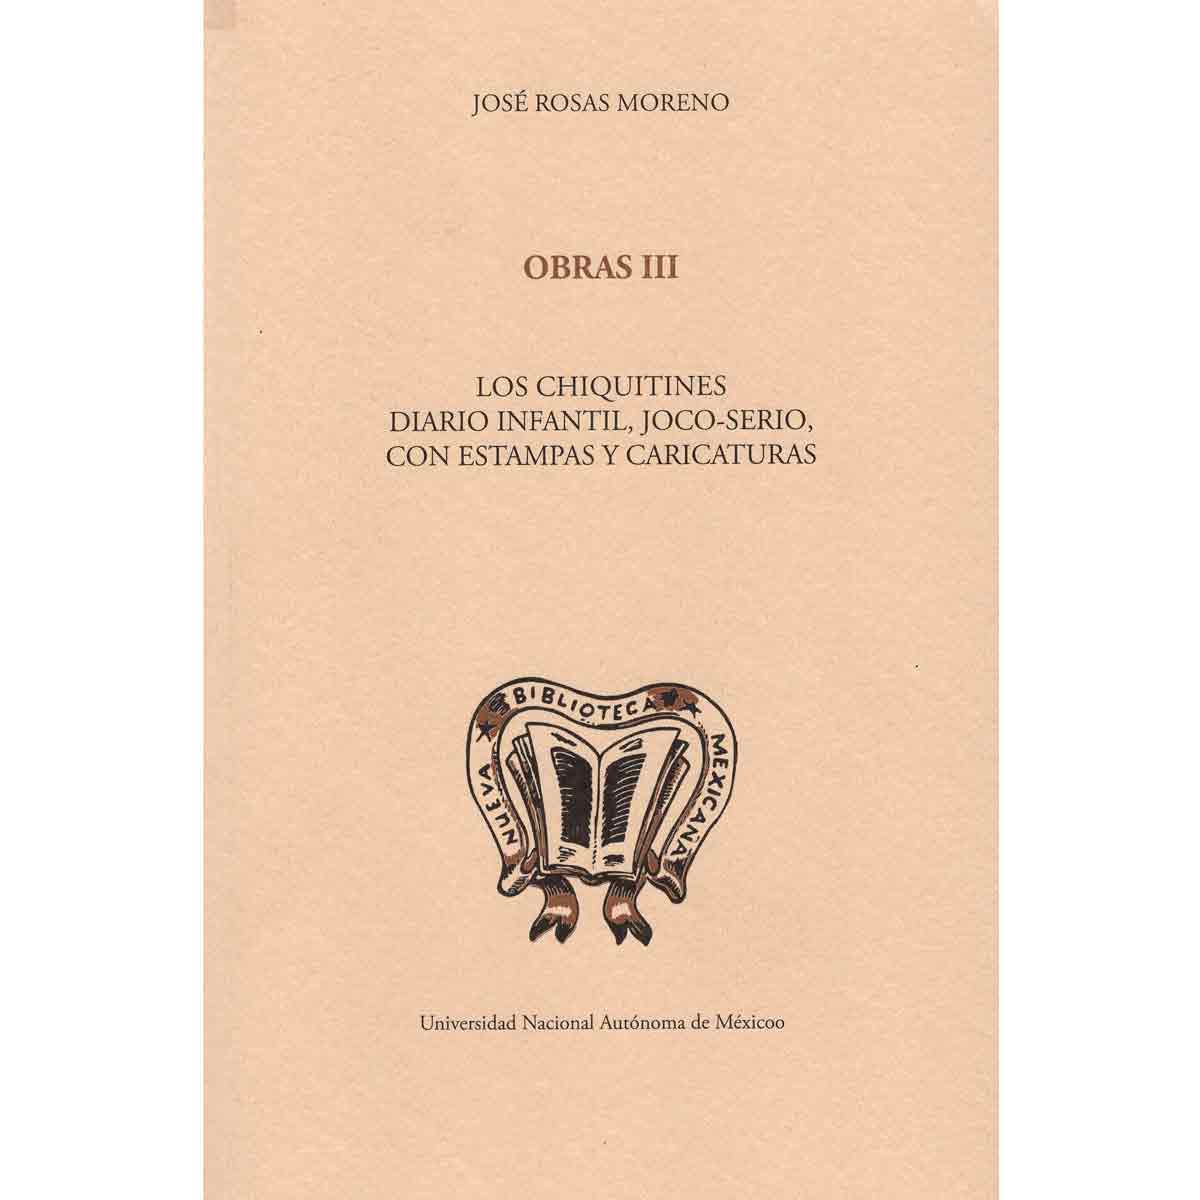 OBRAS III. LOS CHIQUITINES. DIARIO INFANTIL, JOCO-SERIO, CON ESTAMPAS Y CARICATURAS